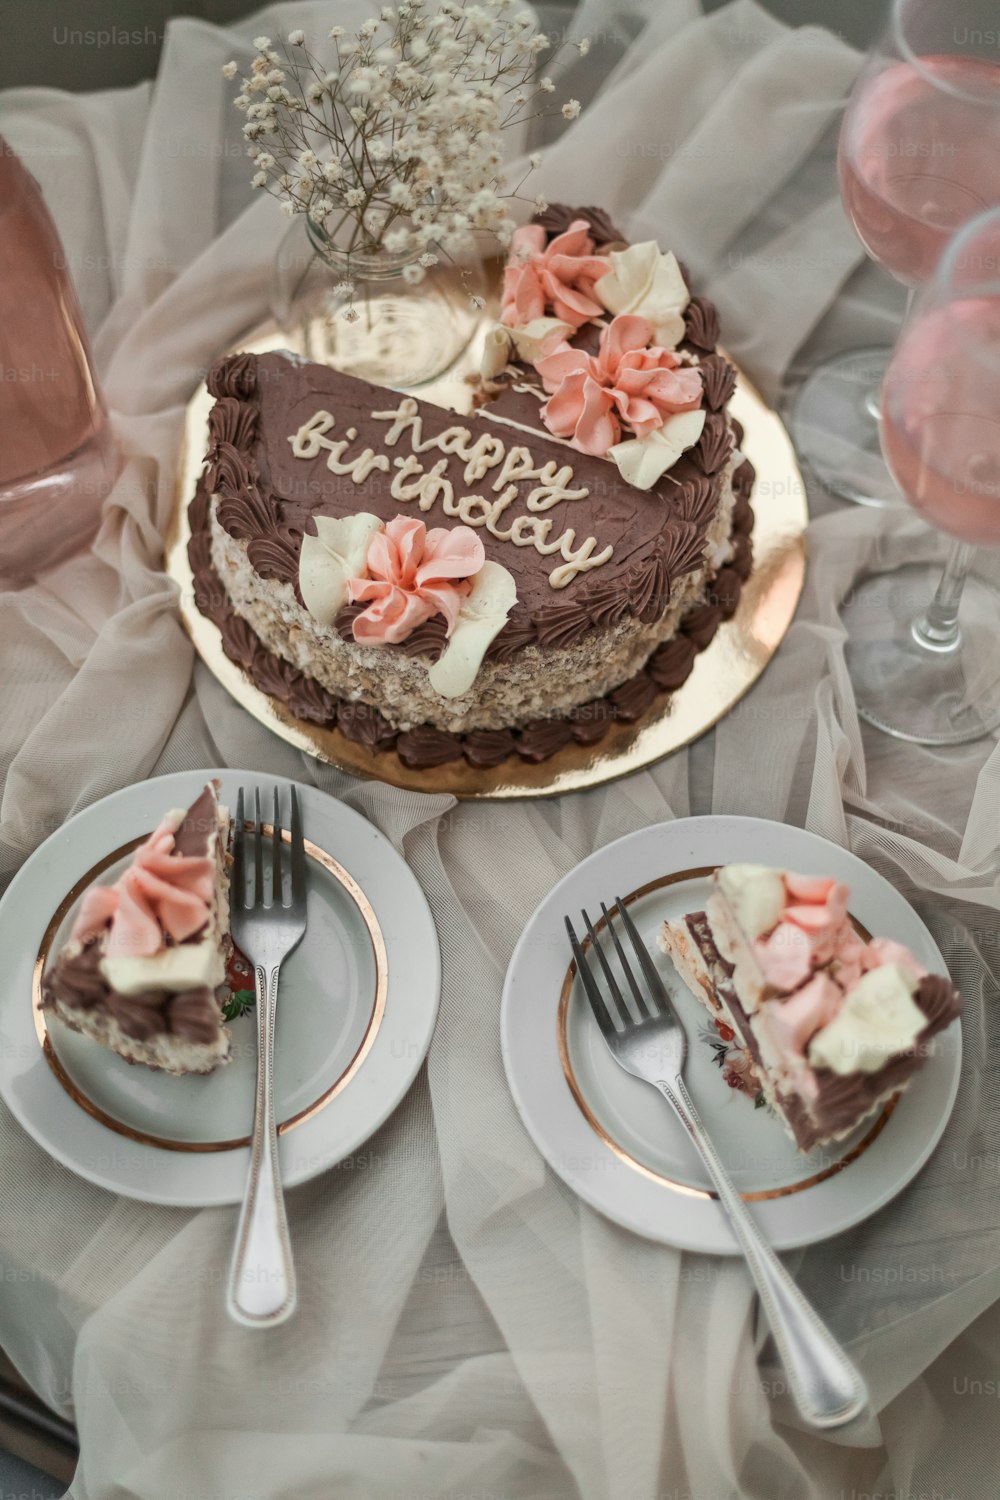 Un pastel de cumpleaños en un plato con un cuchillo y un tenedor